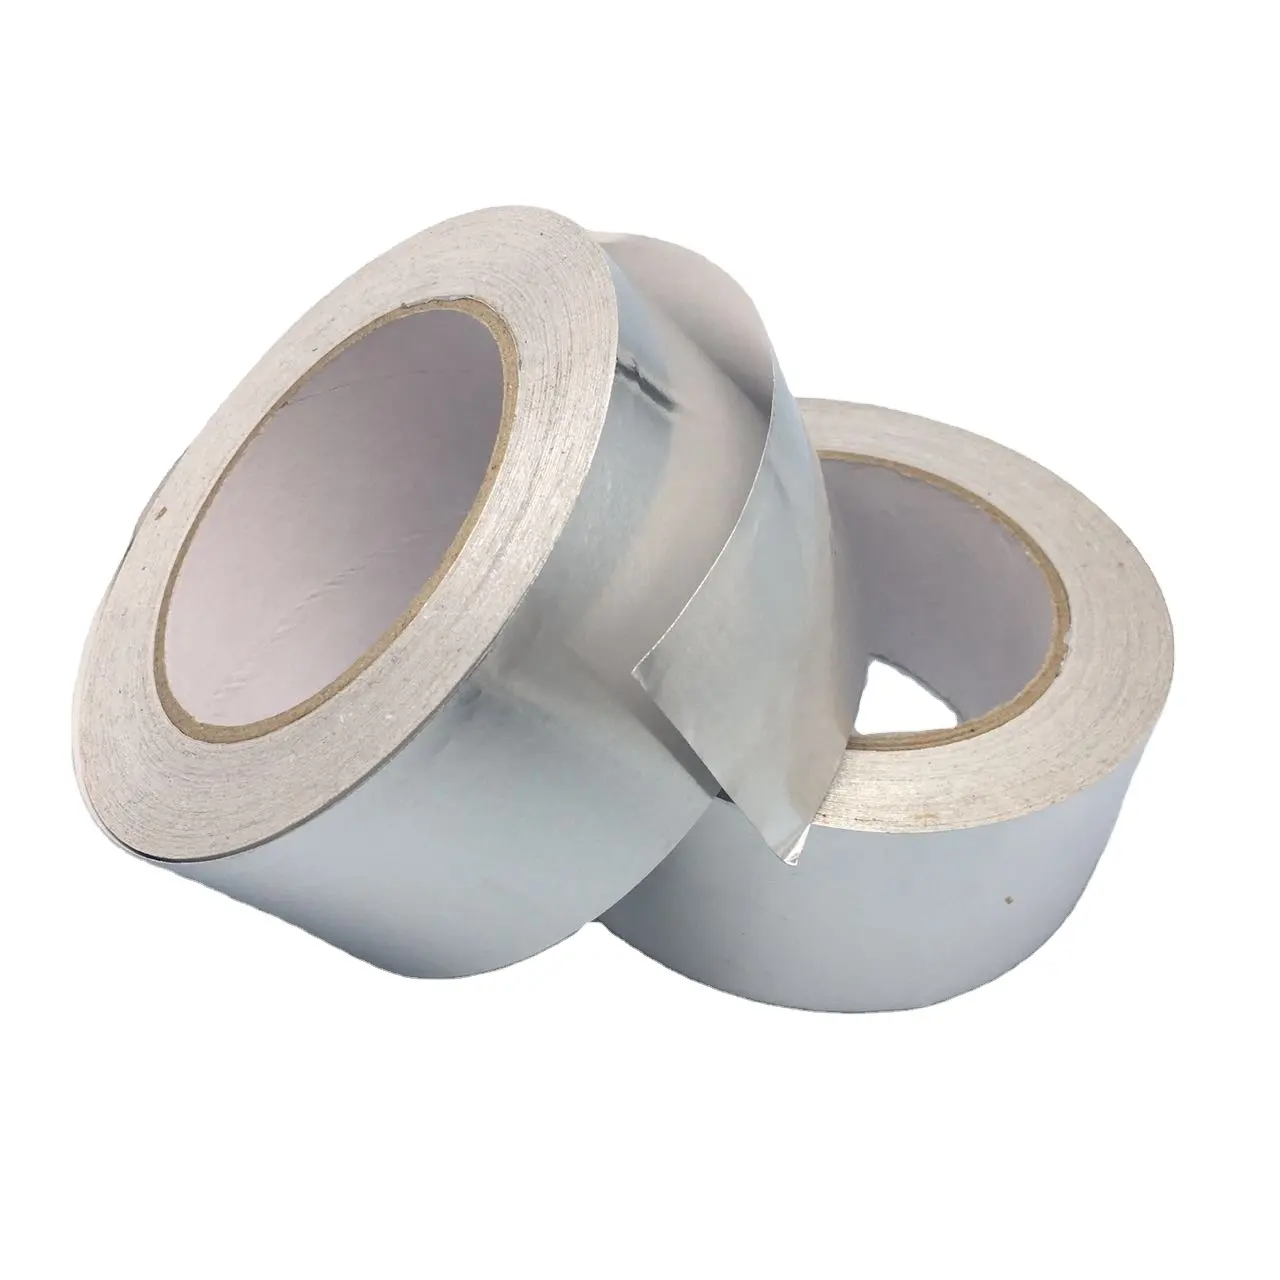 Caoutchouc butyle Protection d'étanchéité tissu de verre étanche prix réparation conduit clignotant pour adhésifs adhésifs 3m ruban de papier d'aluminium